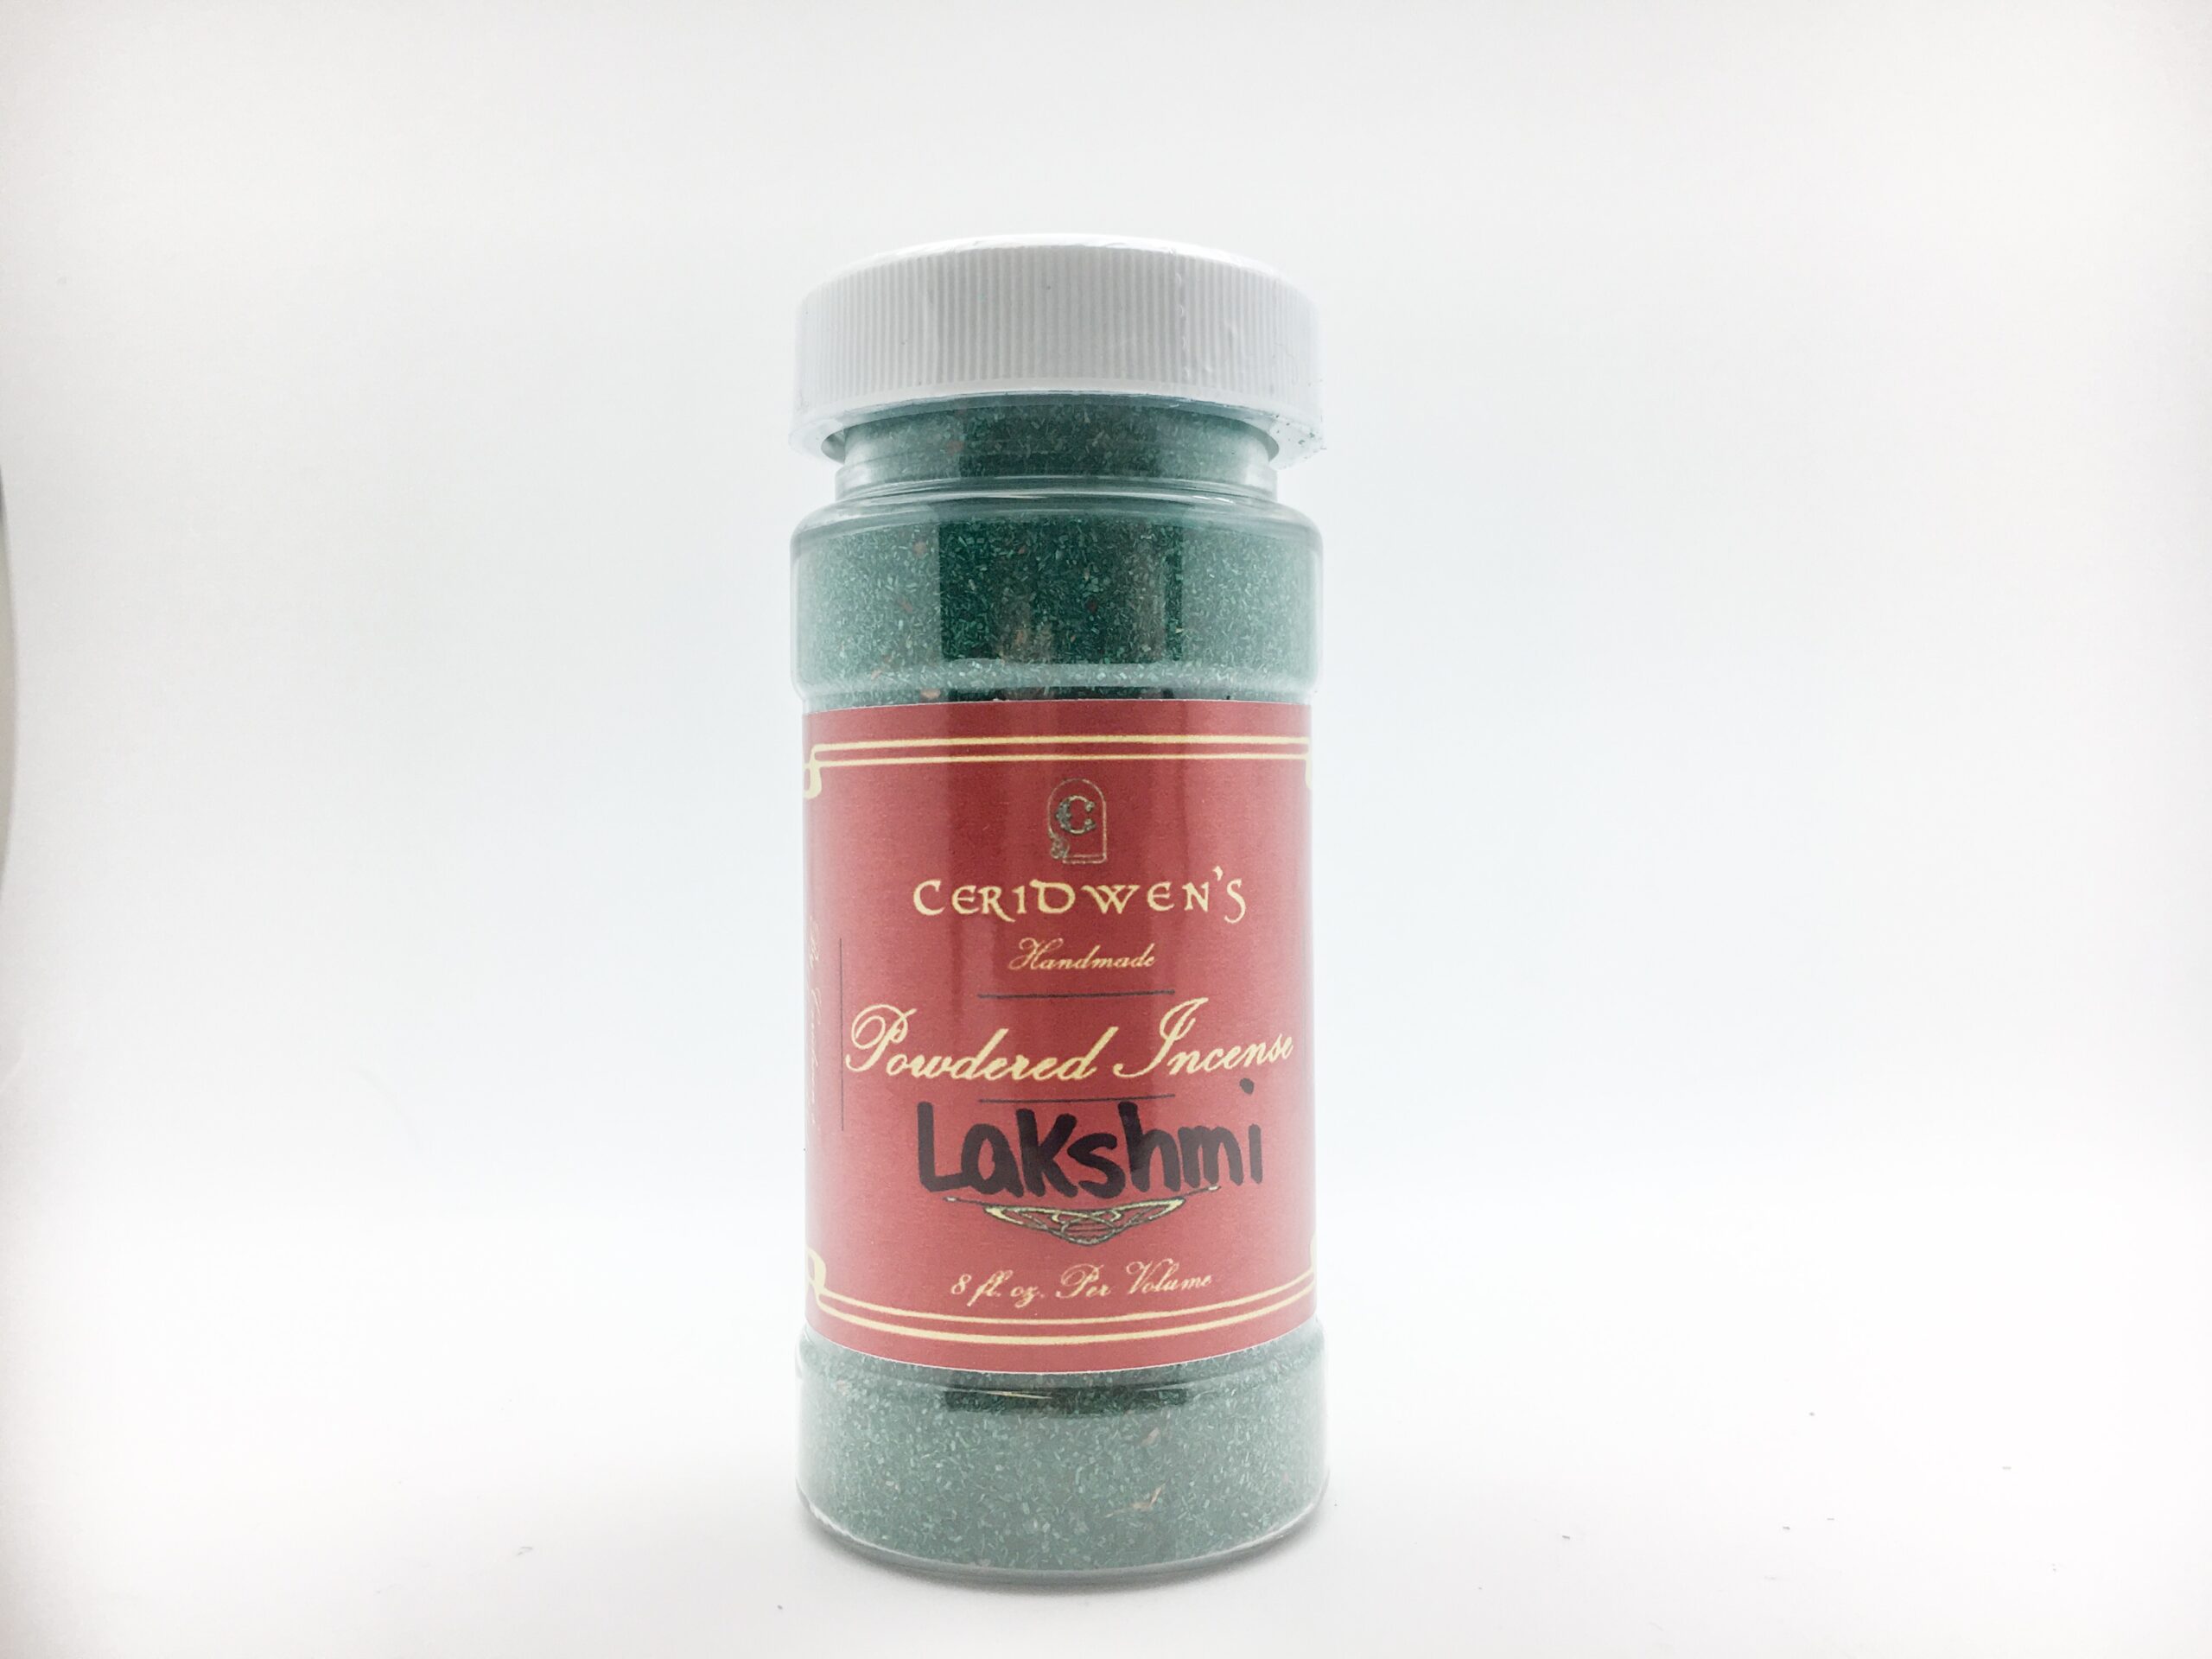 Lakshmi Powdered Incense